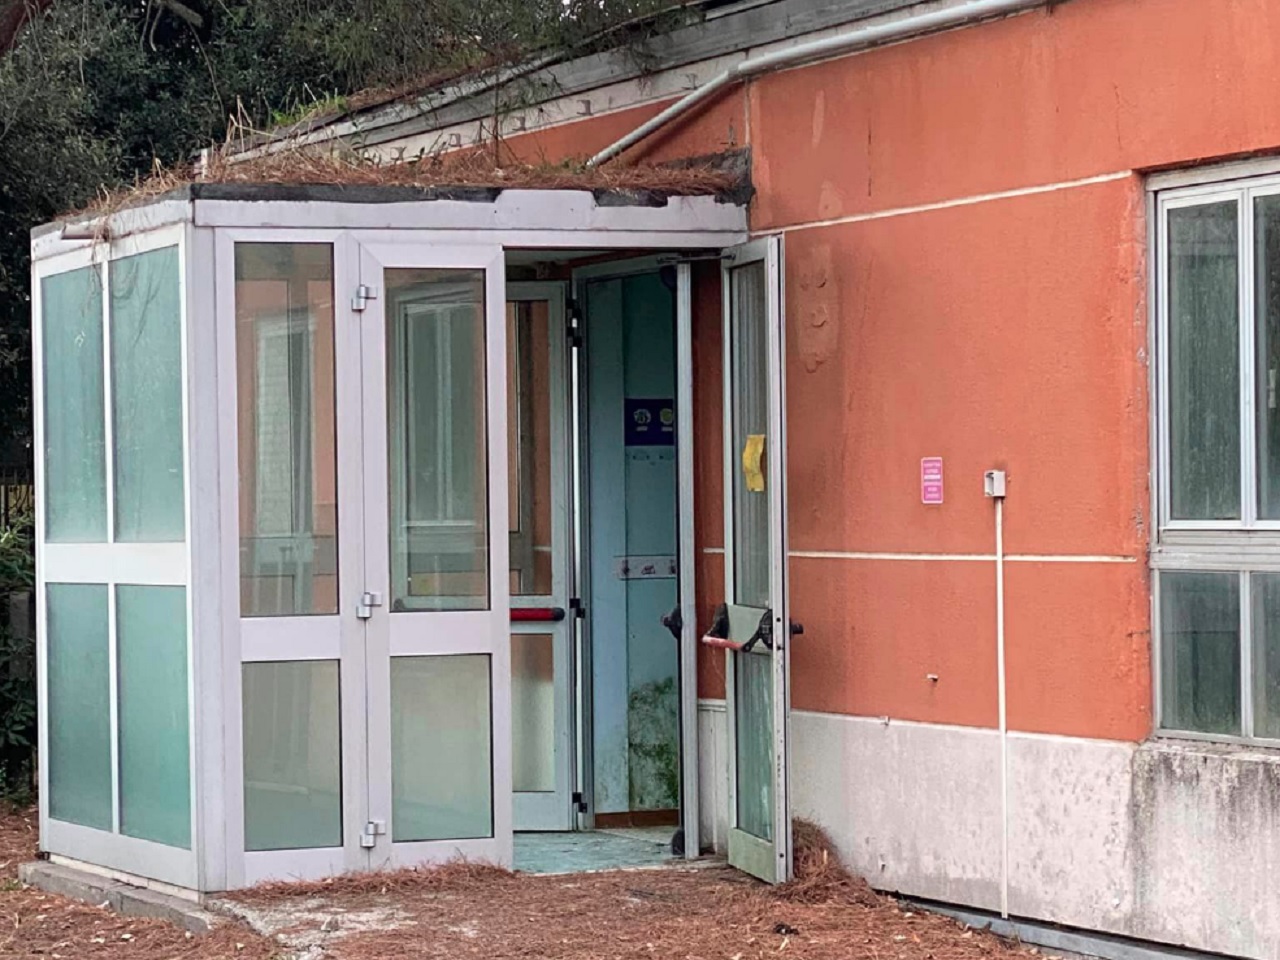 Porta aperta all'ex asilo Mimose a Senigallia, chiuso da anni. Sospetta intrusione per furto o bivacchi. Foto postata sul gruppo Facebook "Furti e Segnalazioni Senigallia"